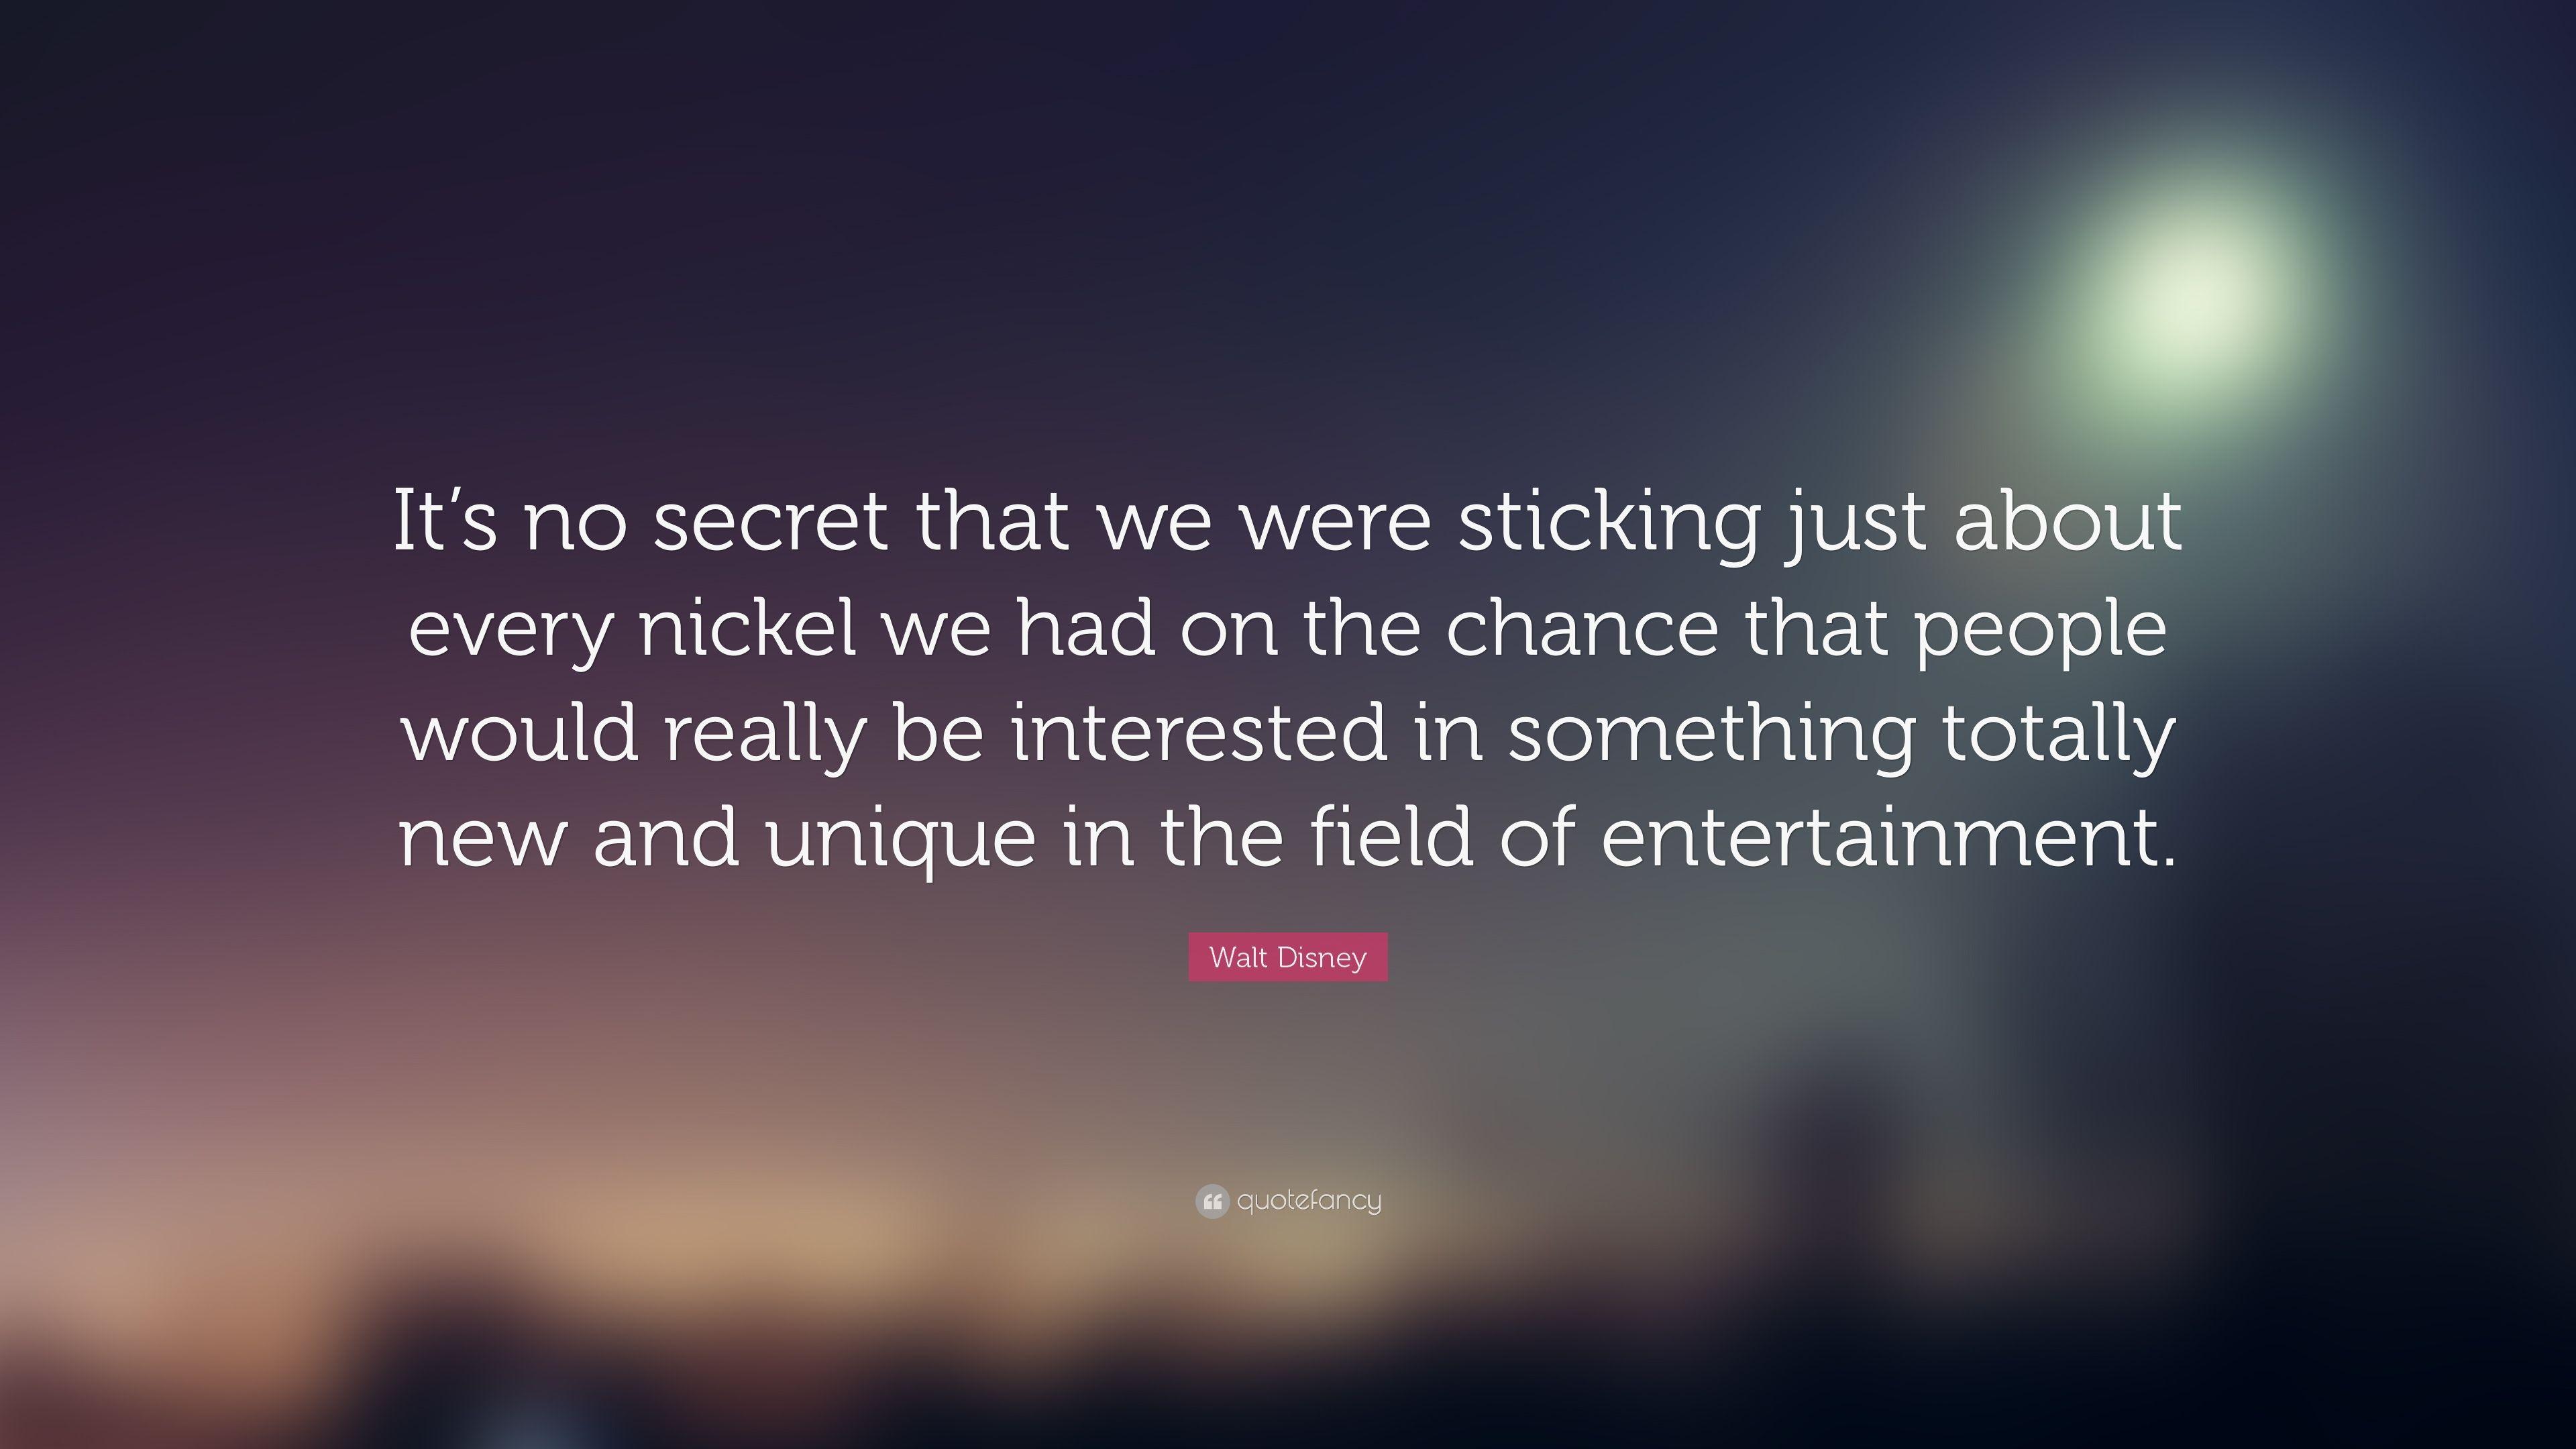 Walt Disney Quote: “It's no secret that we were sticking just